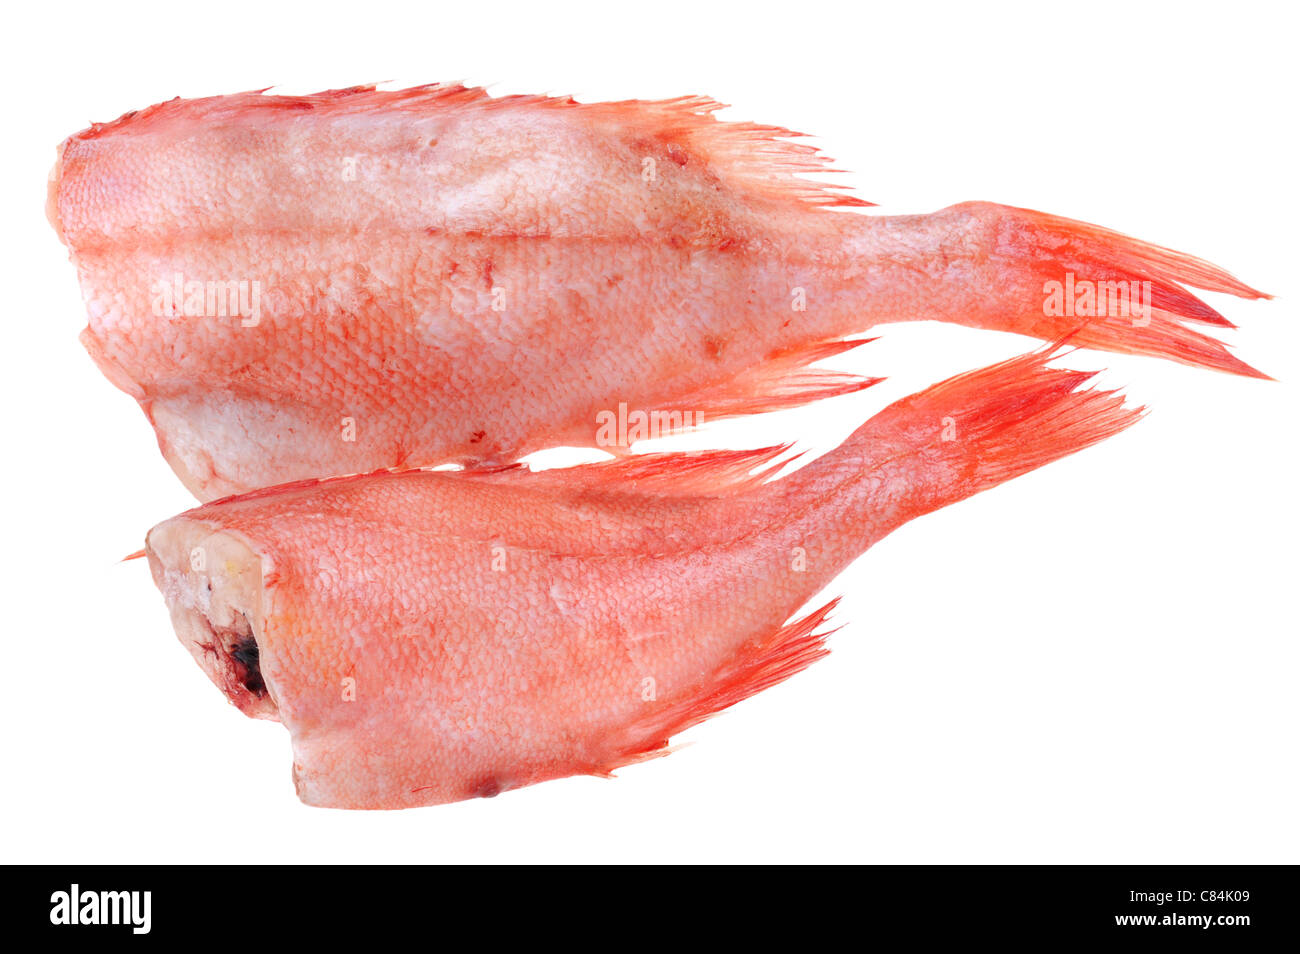 Objekt auf weiß - rote Lebensmittel Zackenbarsch Stockfoto